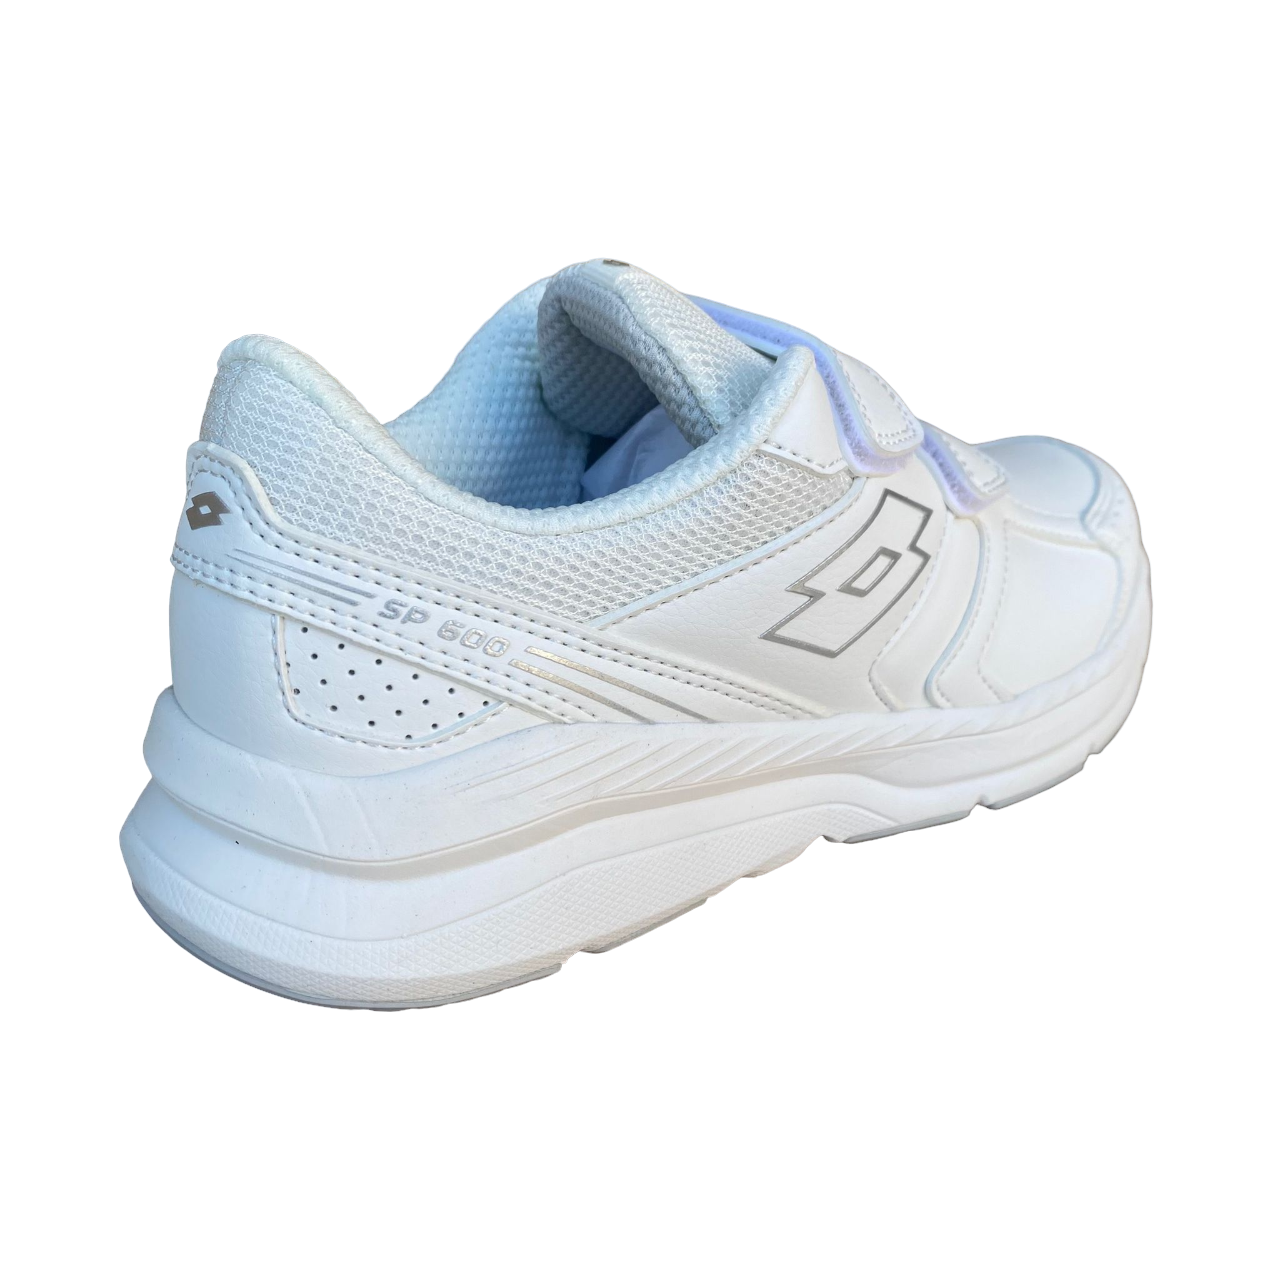 Lotto scarpa da ginnastica da donna con velcro Speedride 609 XIV S219784 1VQ bianco-argento